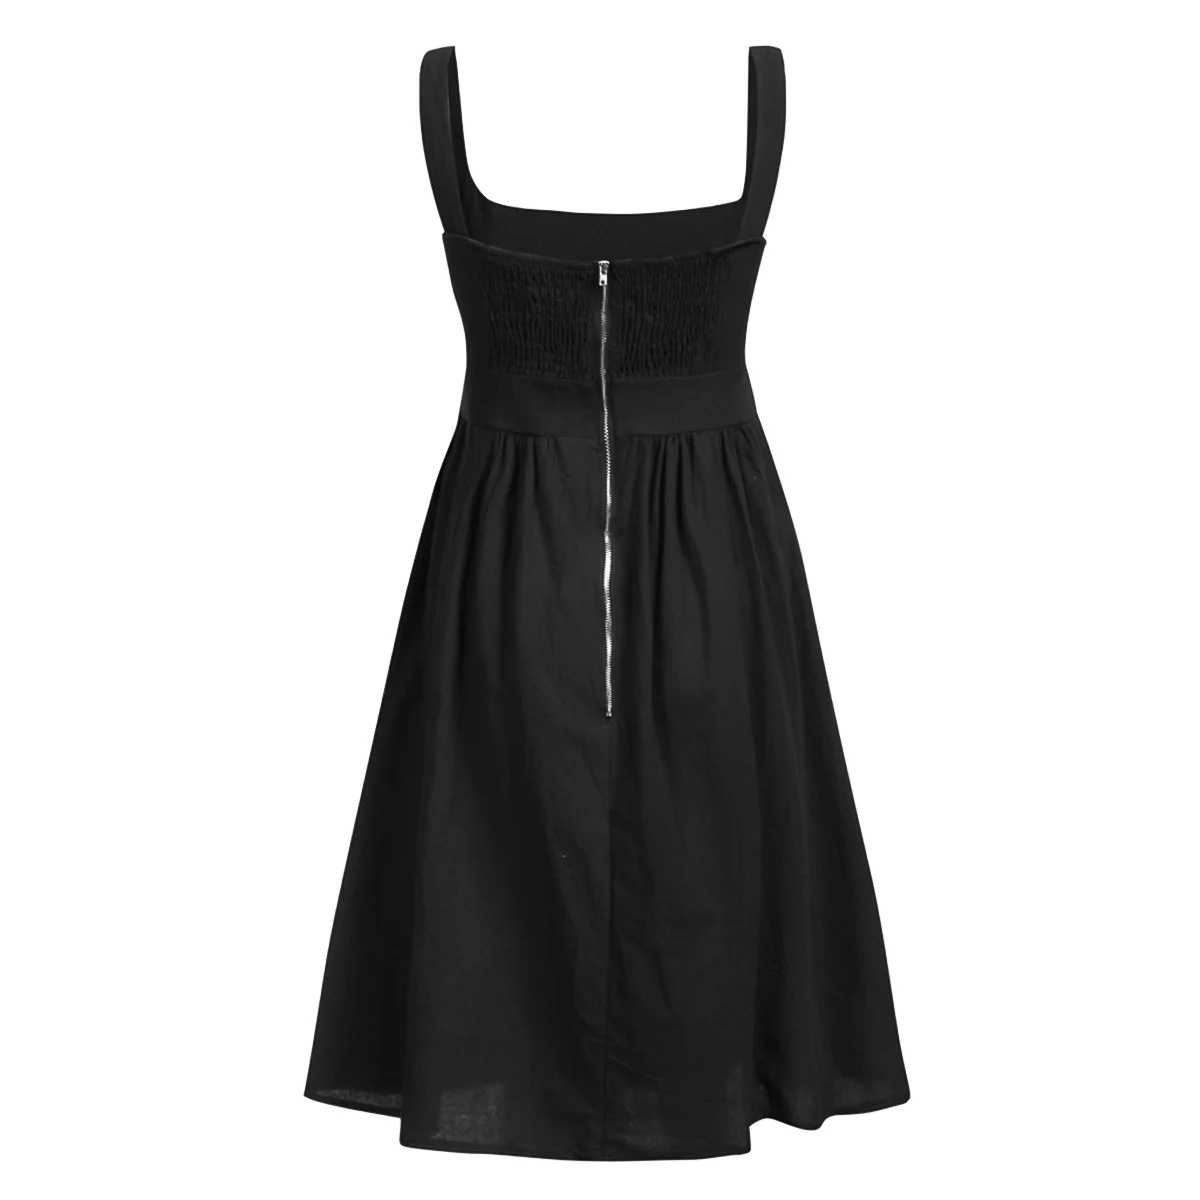 Для женщин Сплошной Low Cut квадратный воротник без рукавов майка платье миди с открытой спиной с карманом молния сзади пляжное платье - Цвет: Black